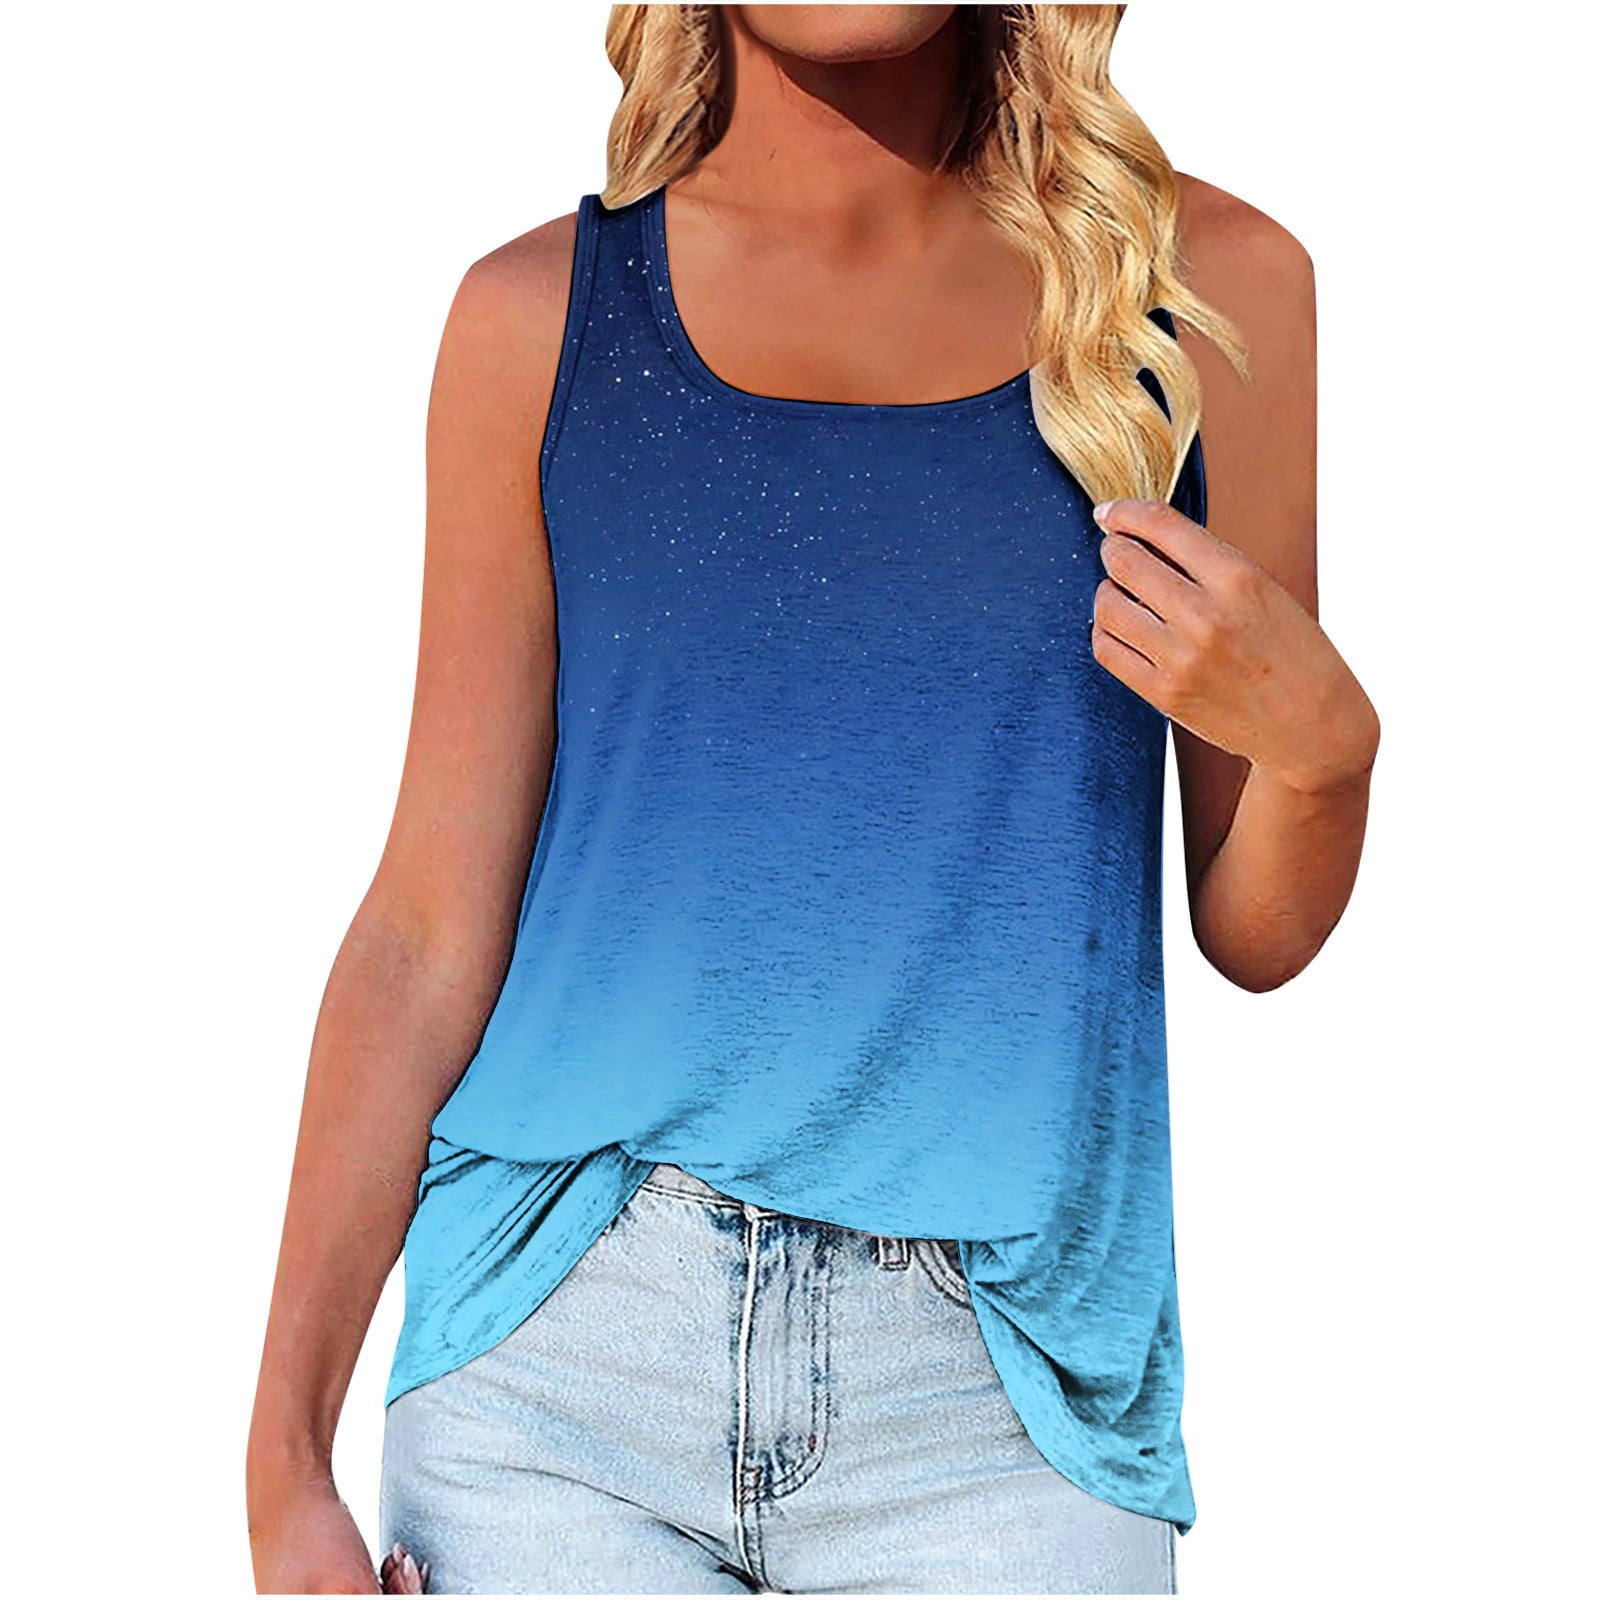 Thylashes Cotton BLUE Tank Top, Women's Innerwear, Summer